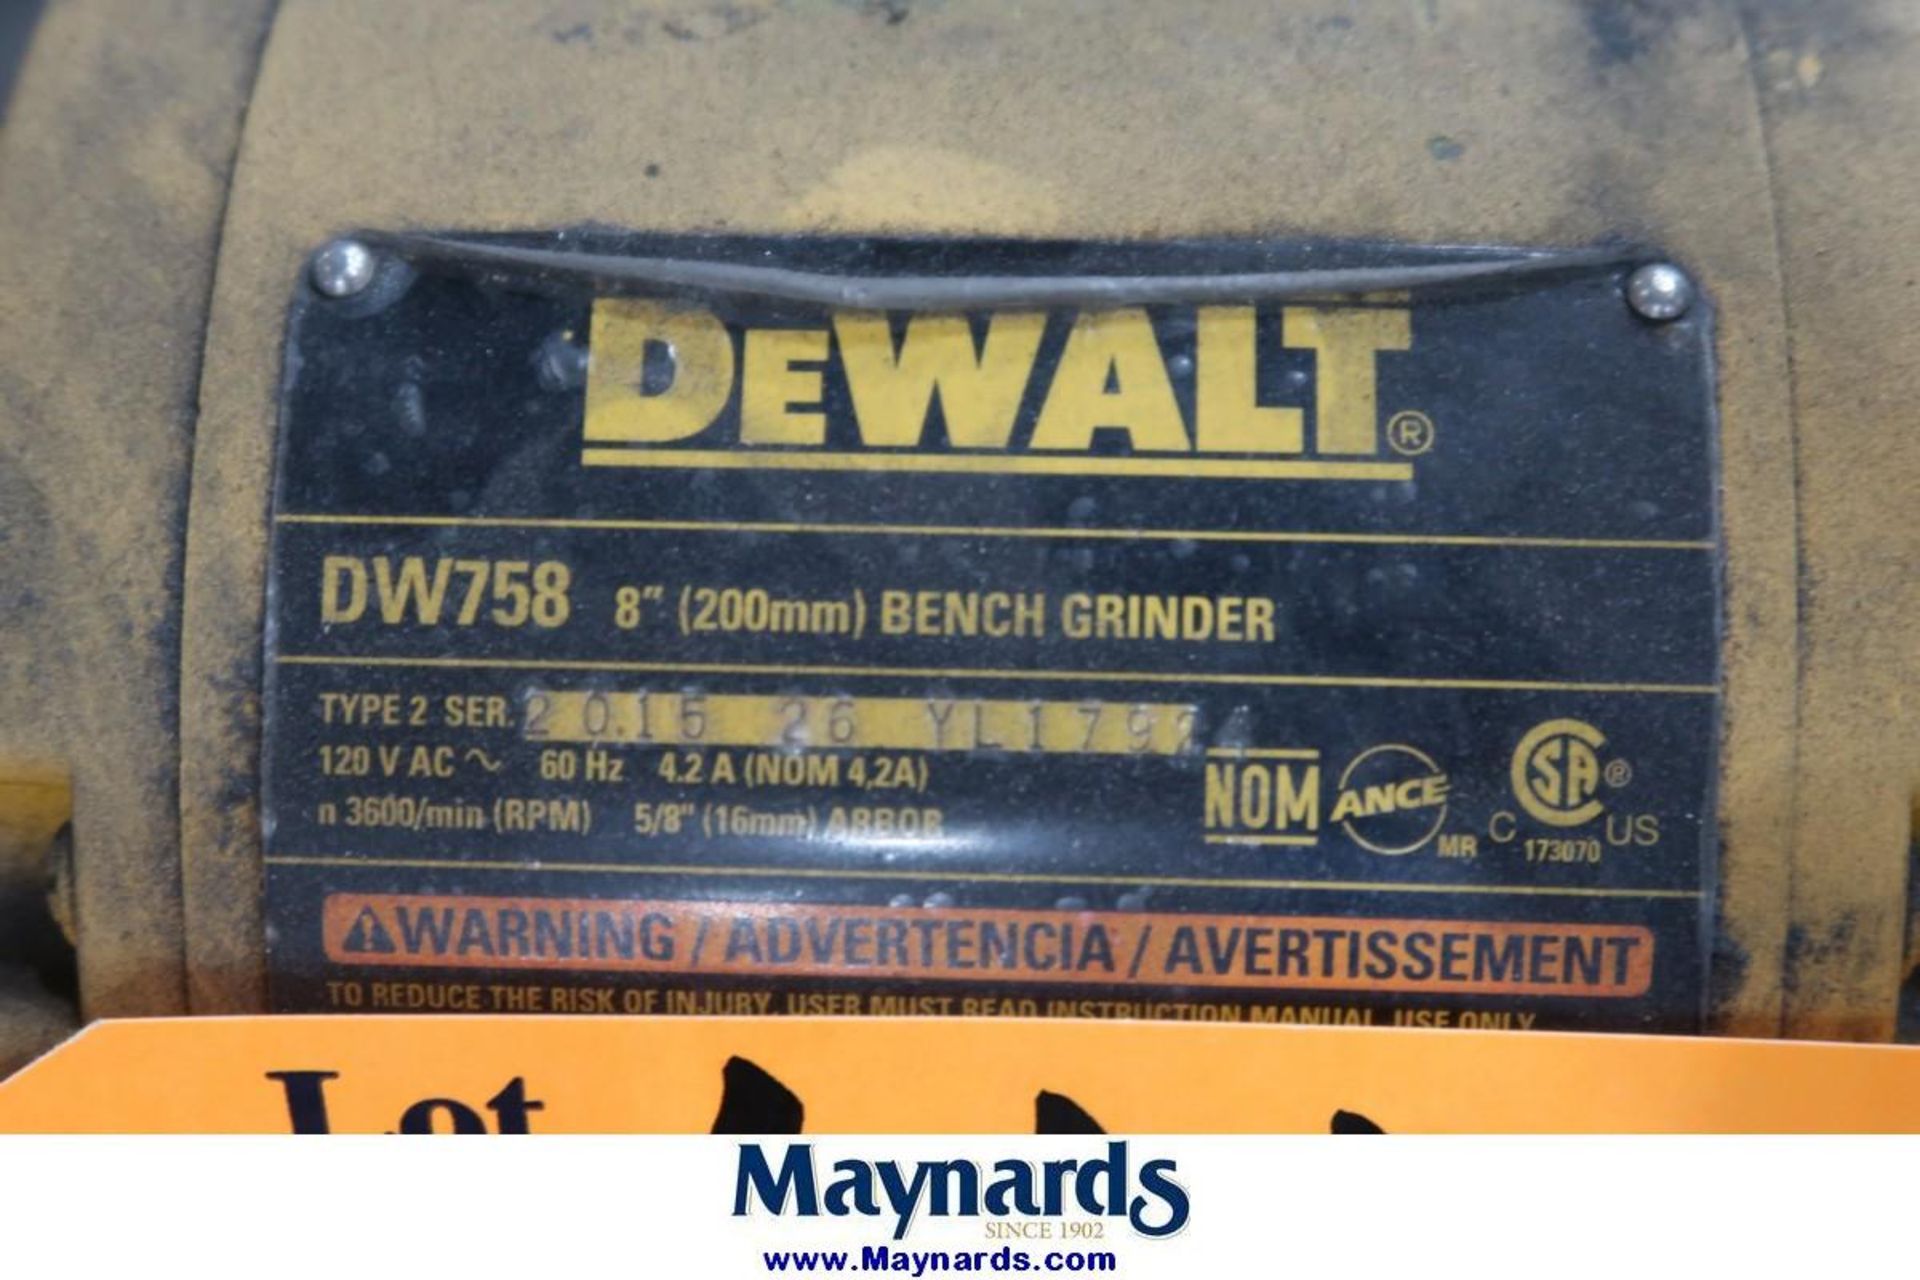 DeWalt DW758 8" Bench Grinder - Image 2 of 2